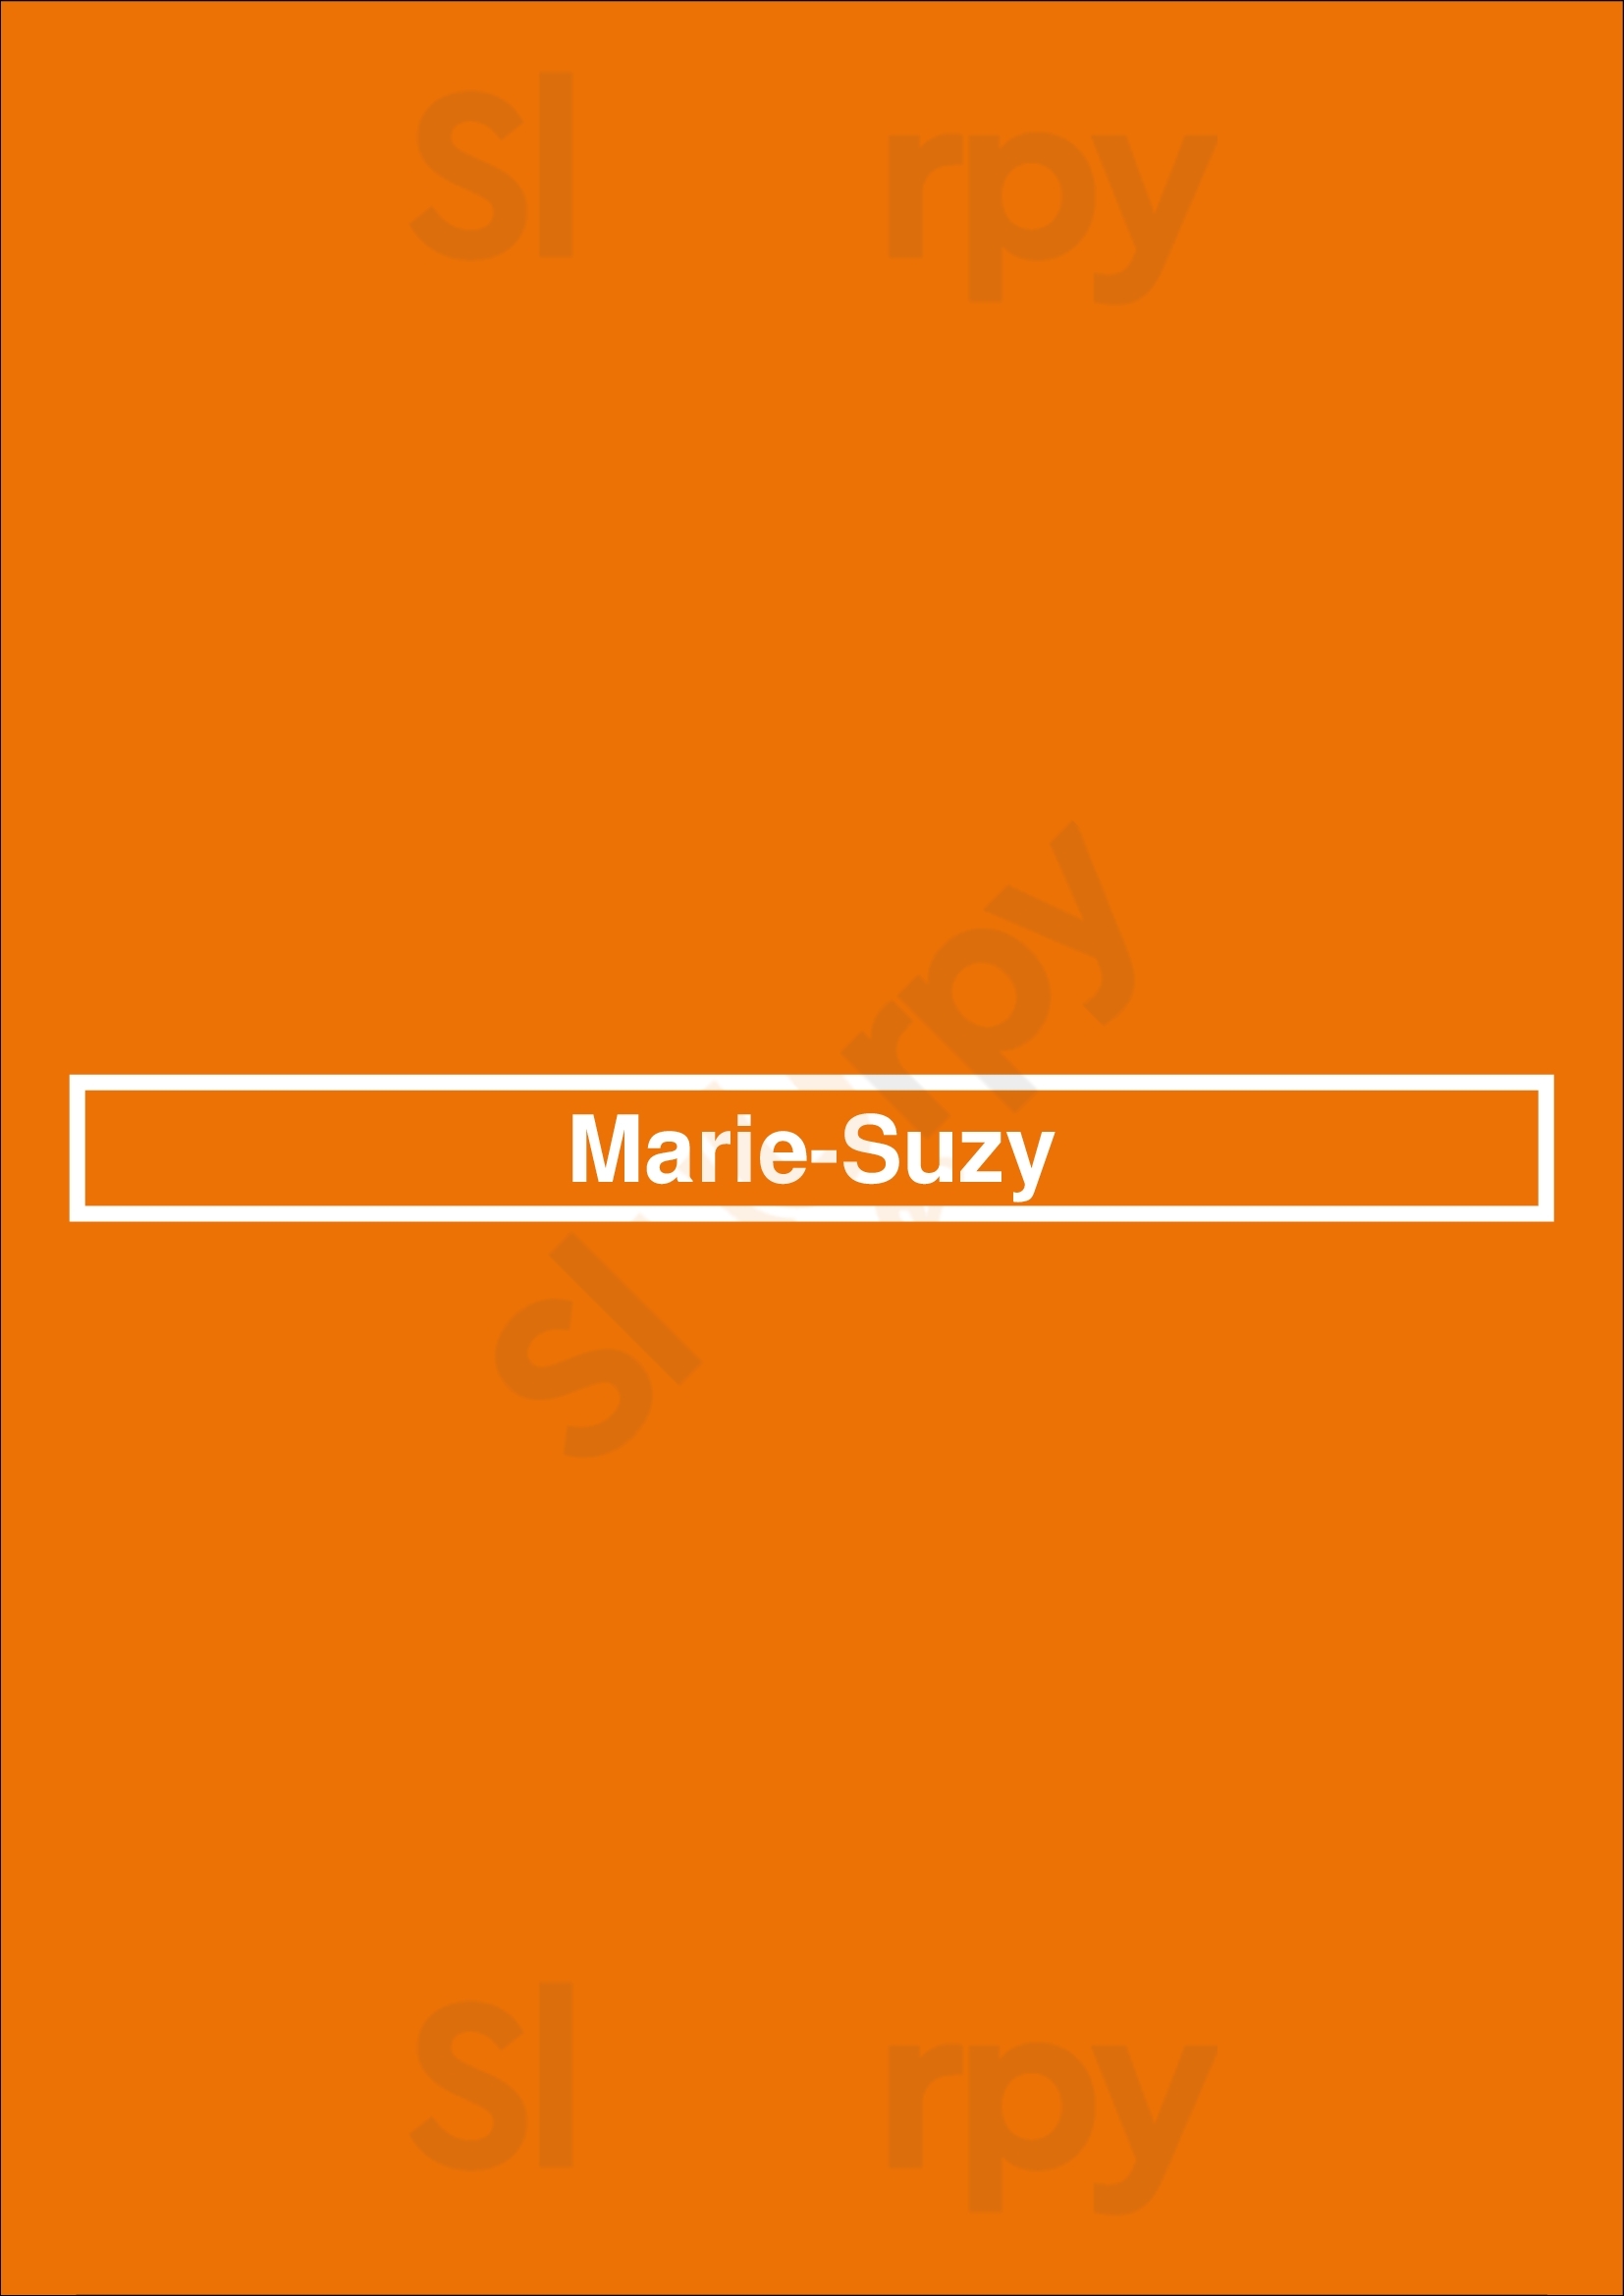 Marie-suzy Paris Menu - 1